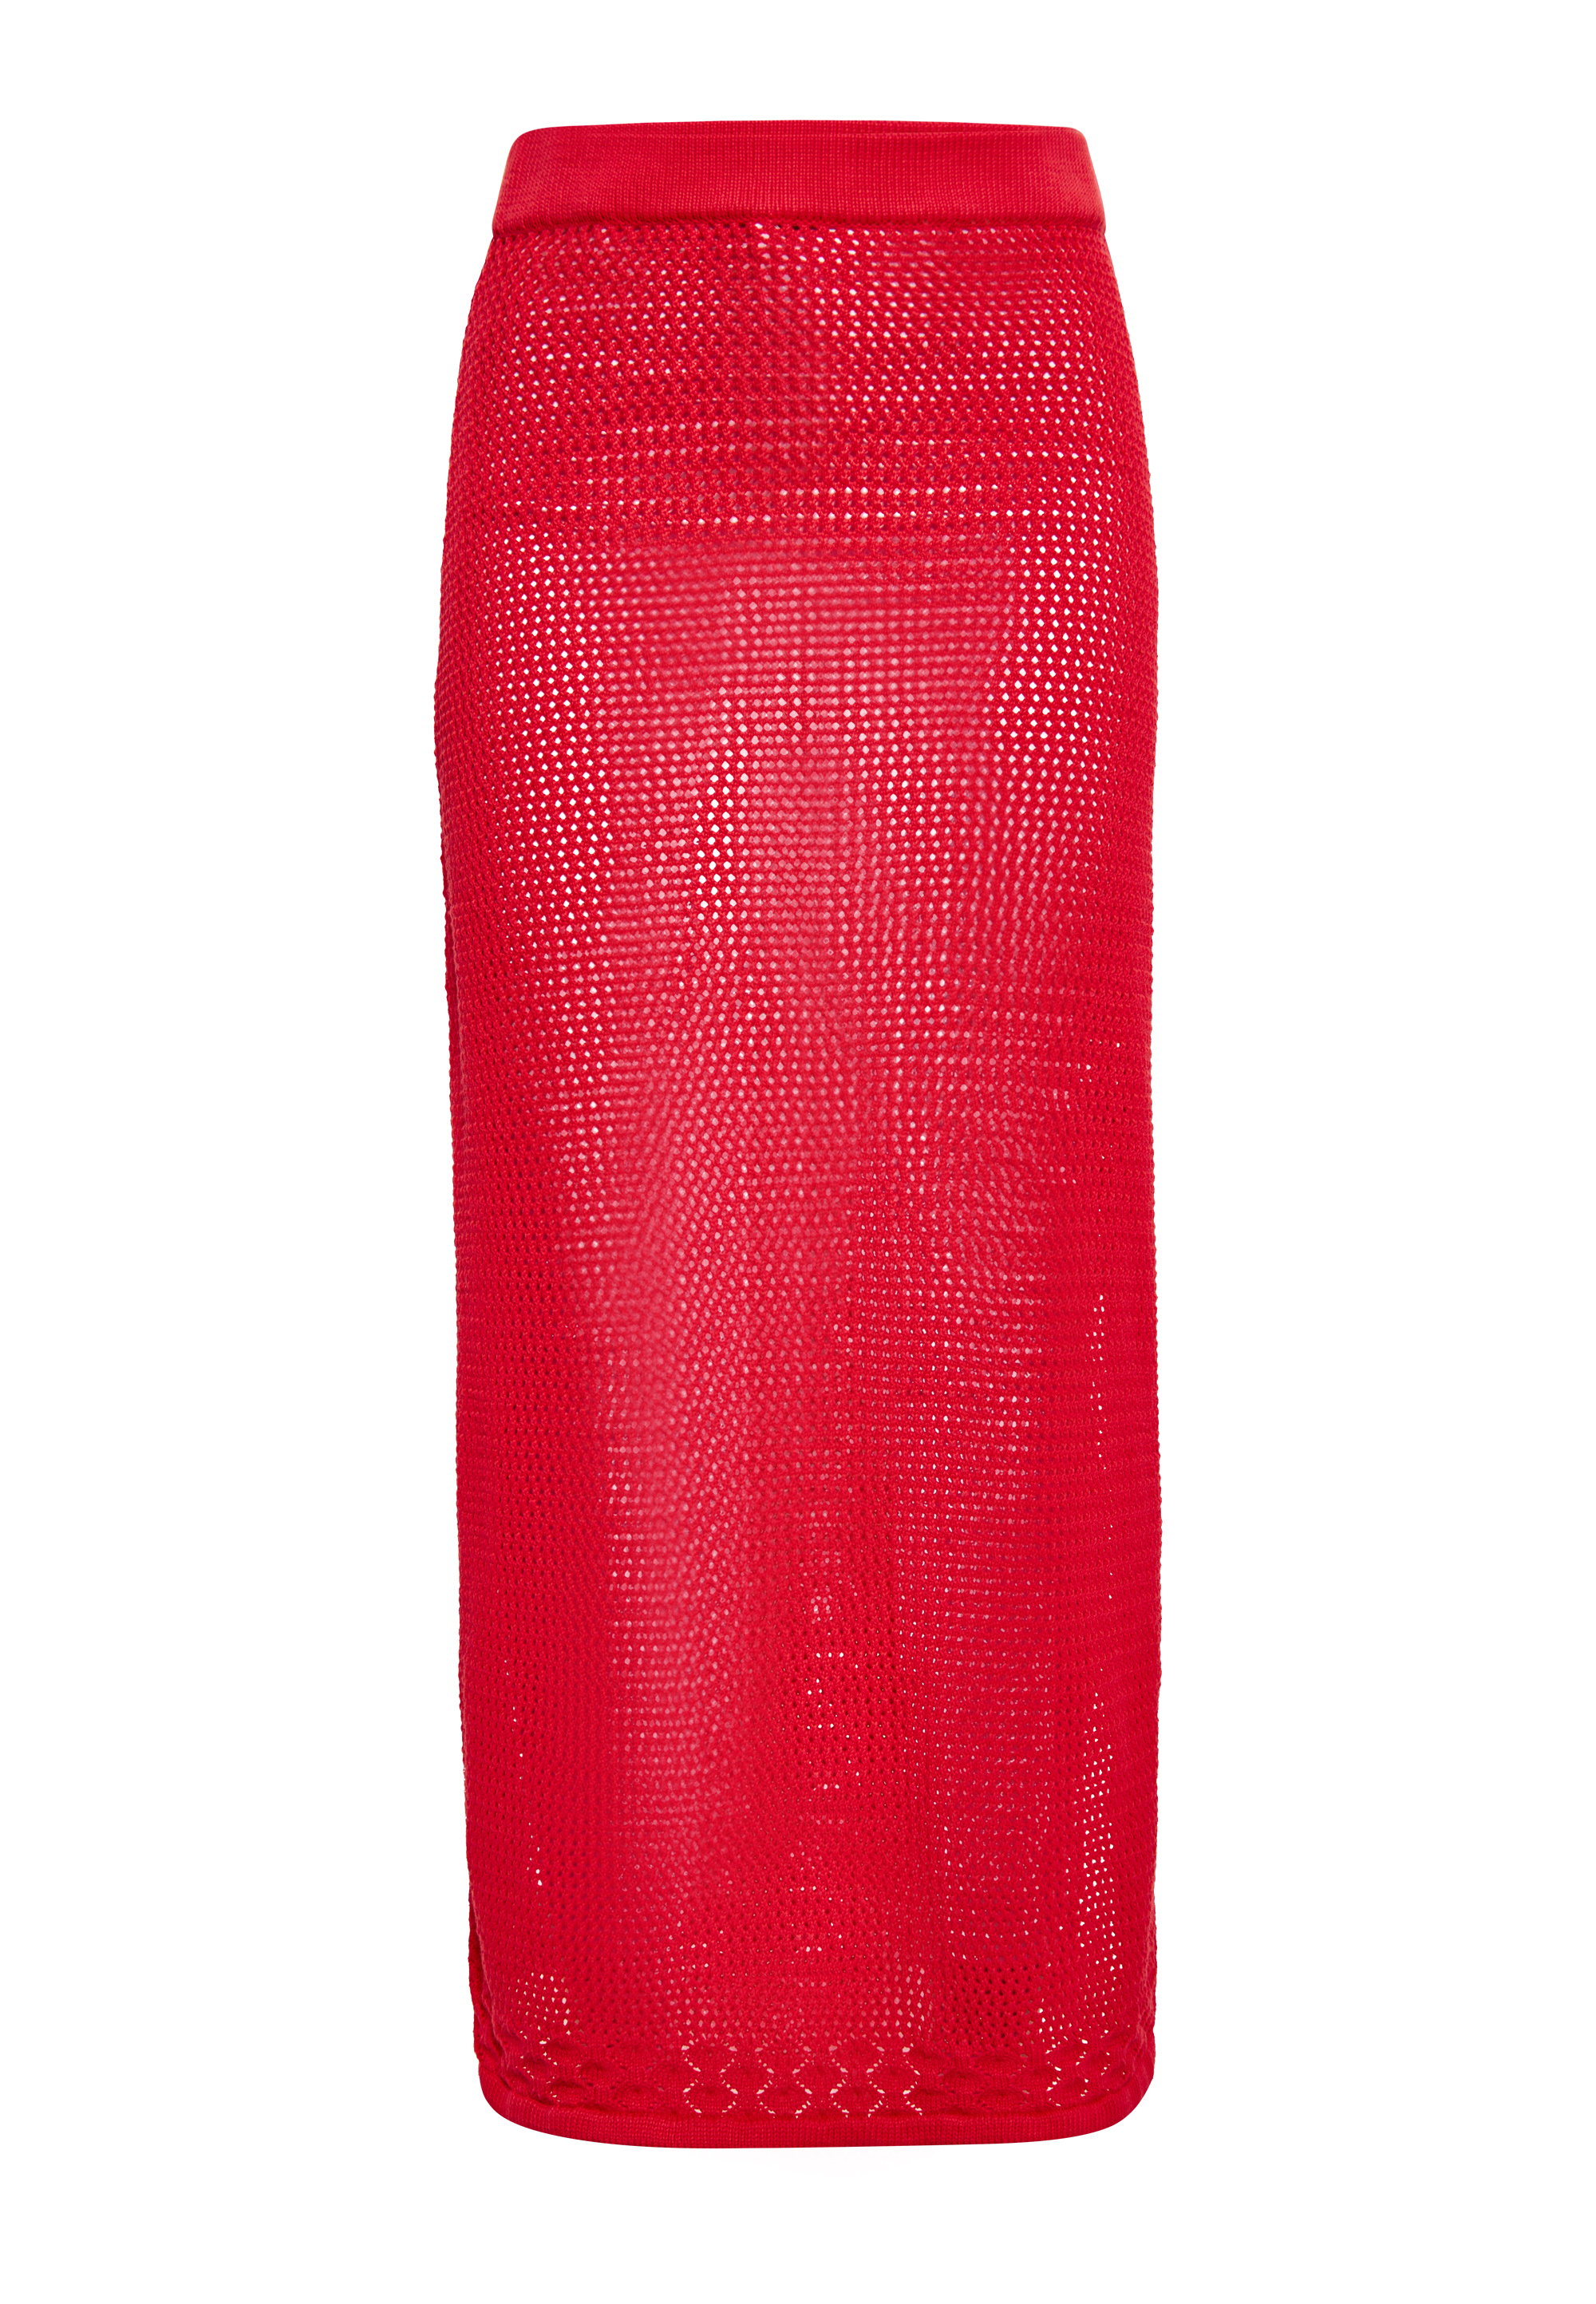 Длинная юбка IZIA, красный юбка длинная с принтом m красный